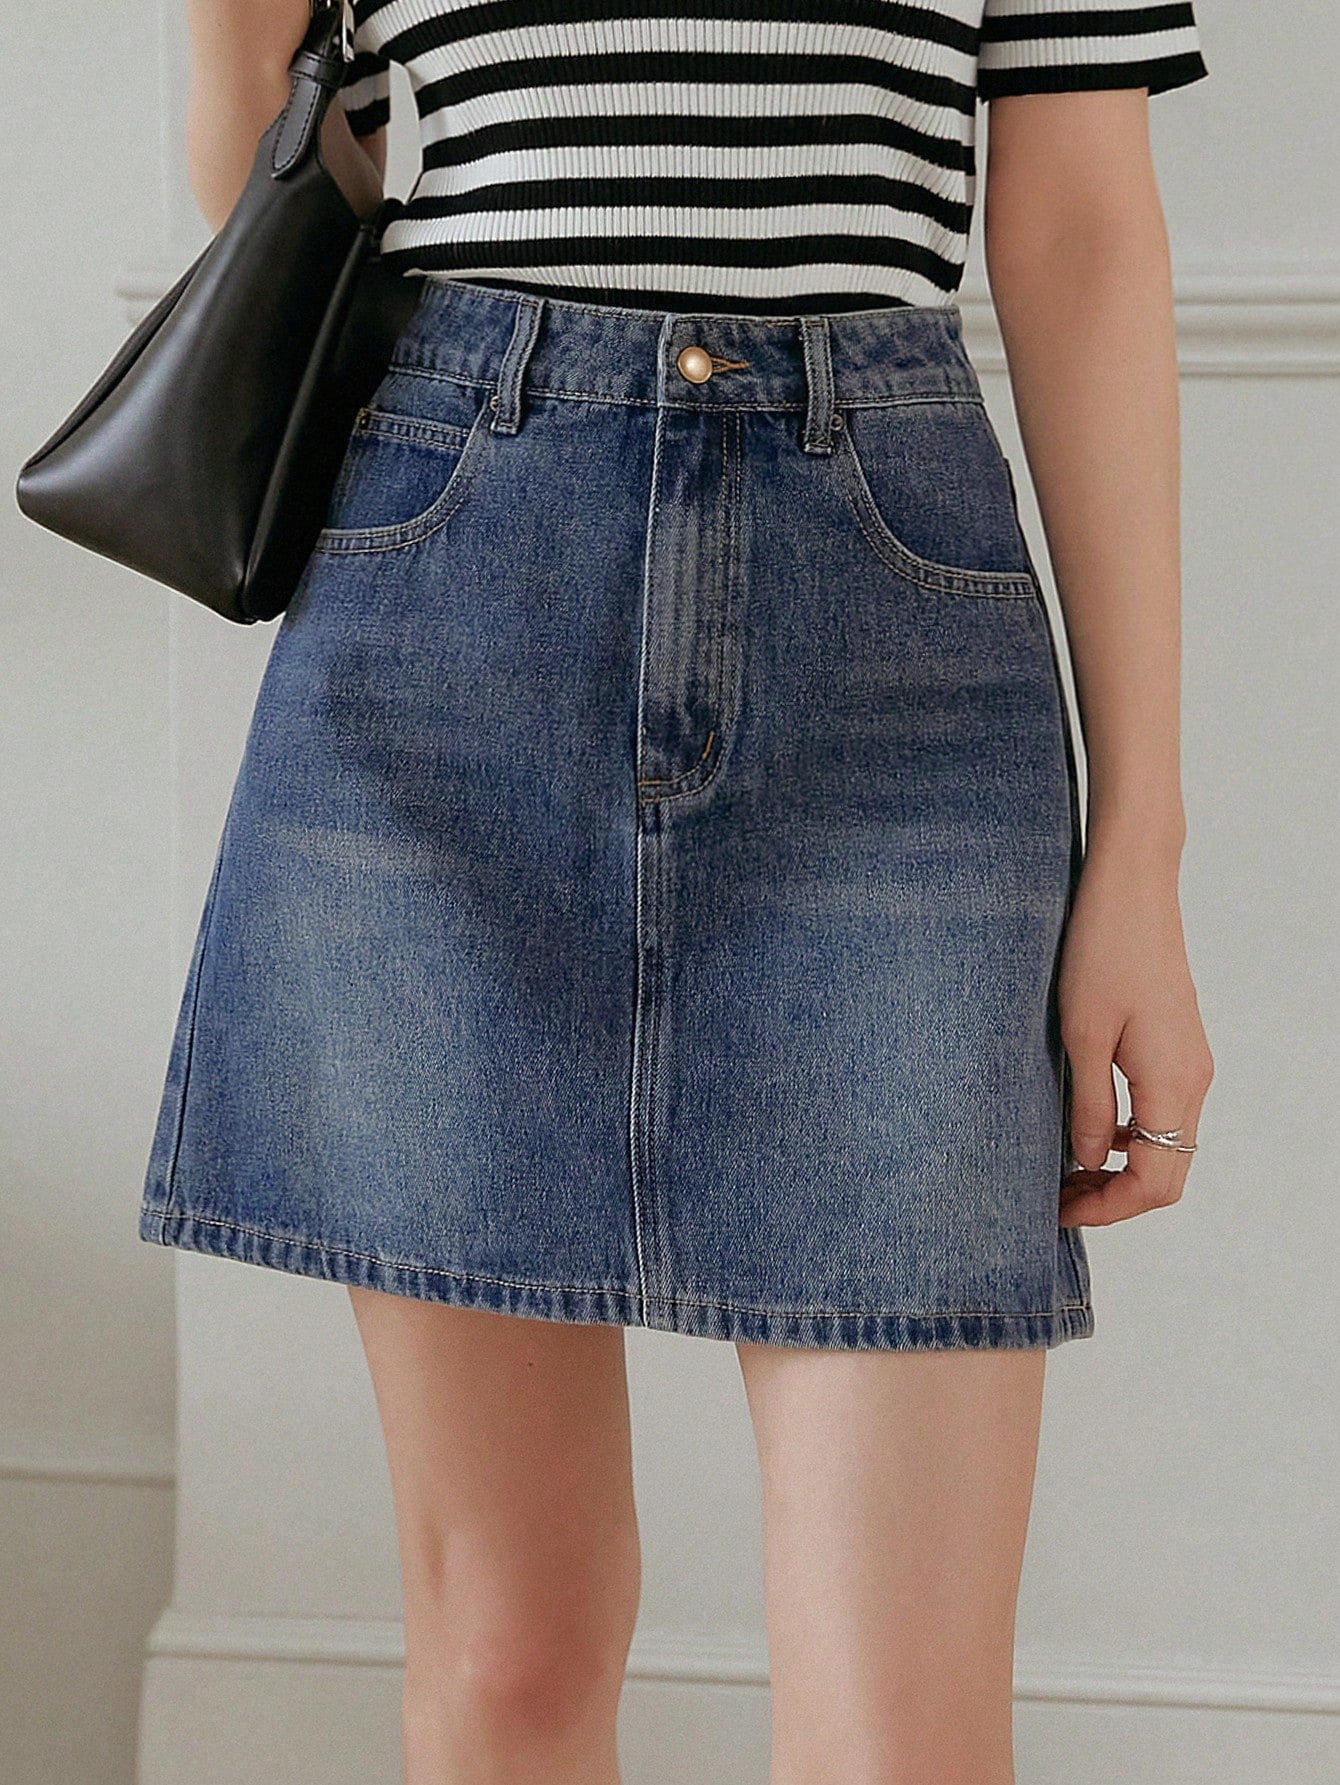 High Waist Women's Denim Skirt With Pockets, A-Line Style